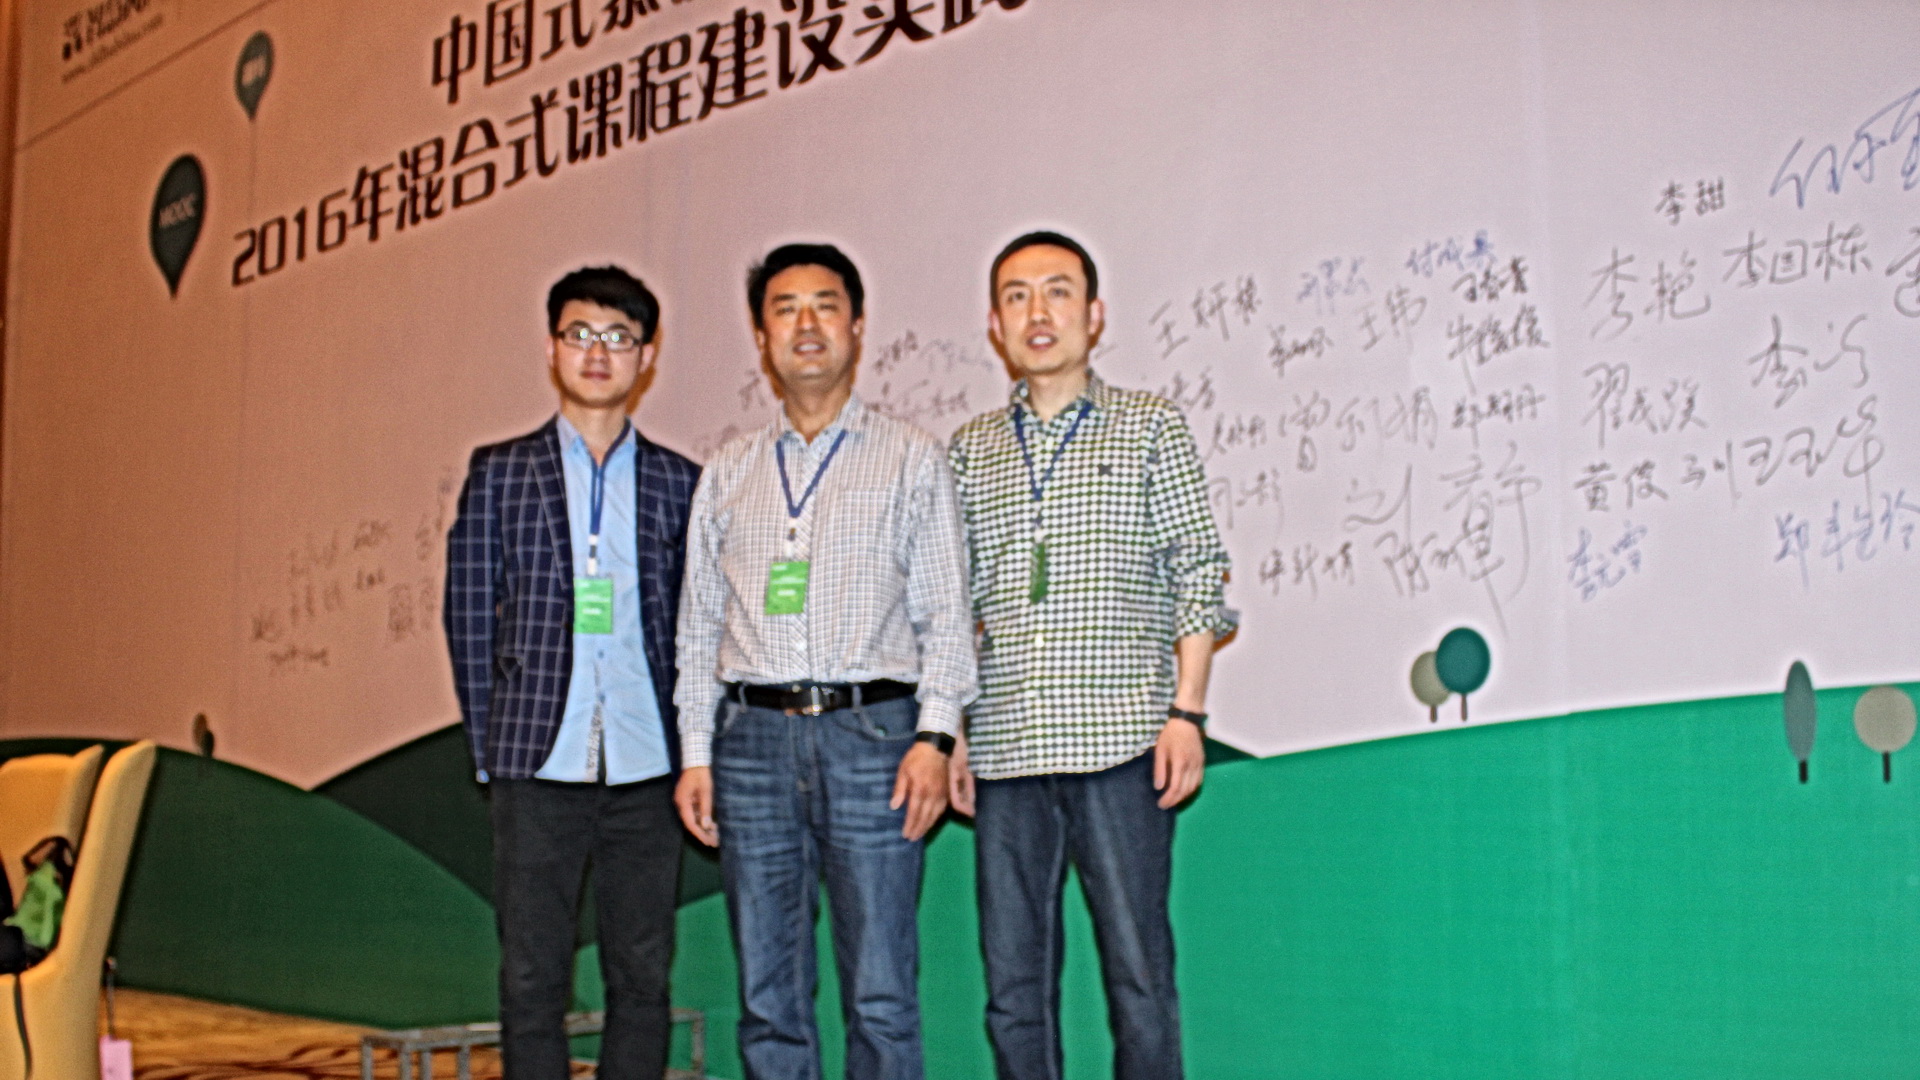 我院参加2016年“中国式”慕课混合式课程建设研讨会